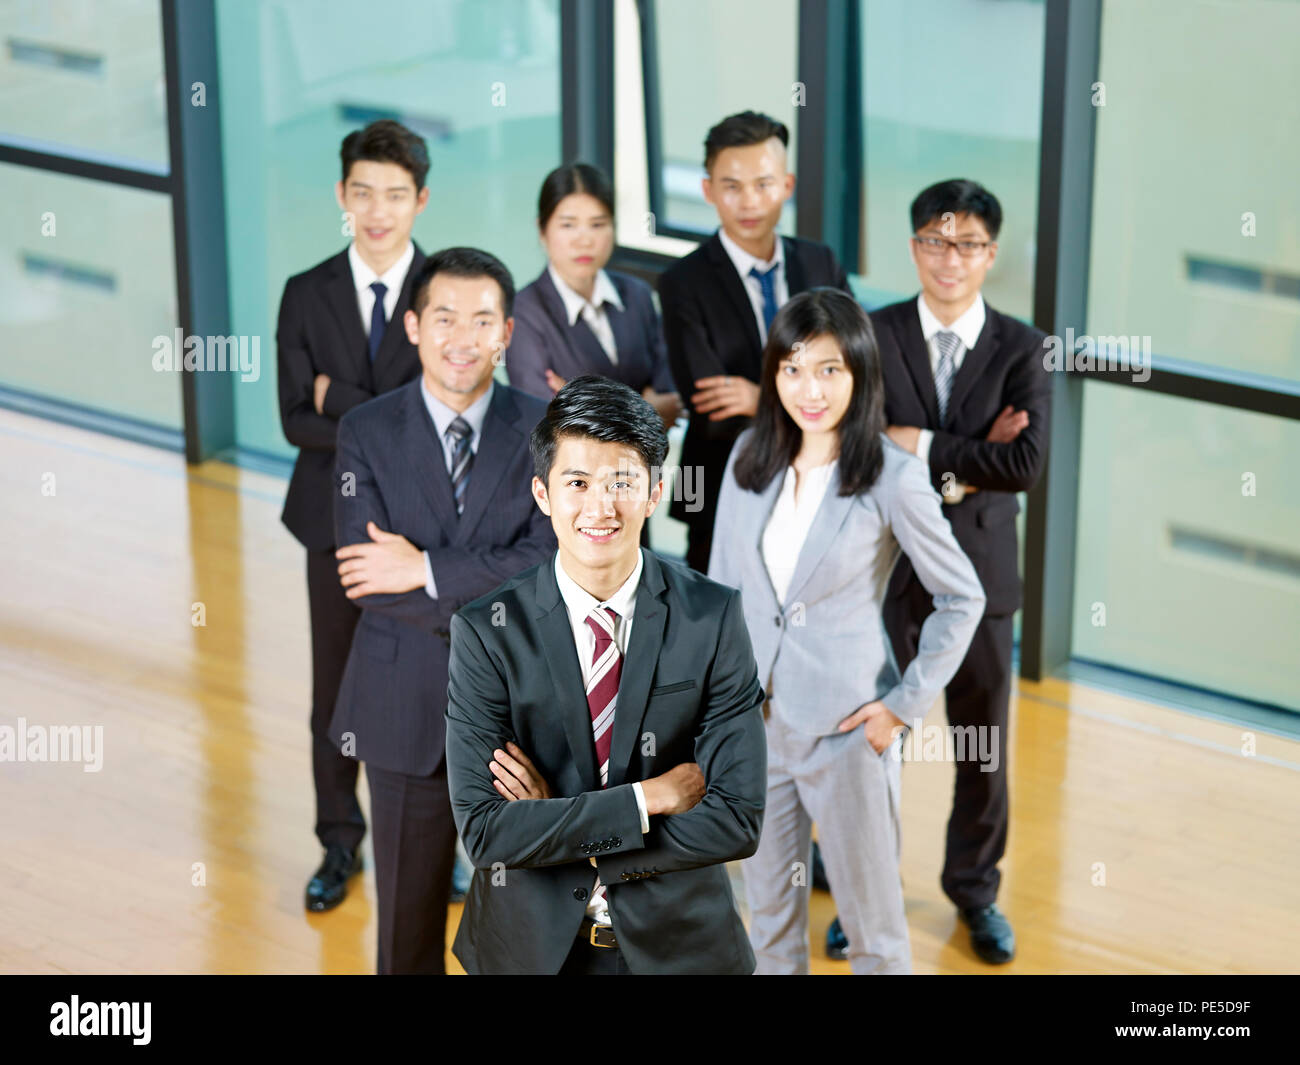 Porträt eines erfolgreichen asiatischen Business Team von einem jungen Manager geführt. Stockfoto